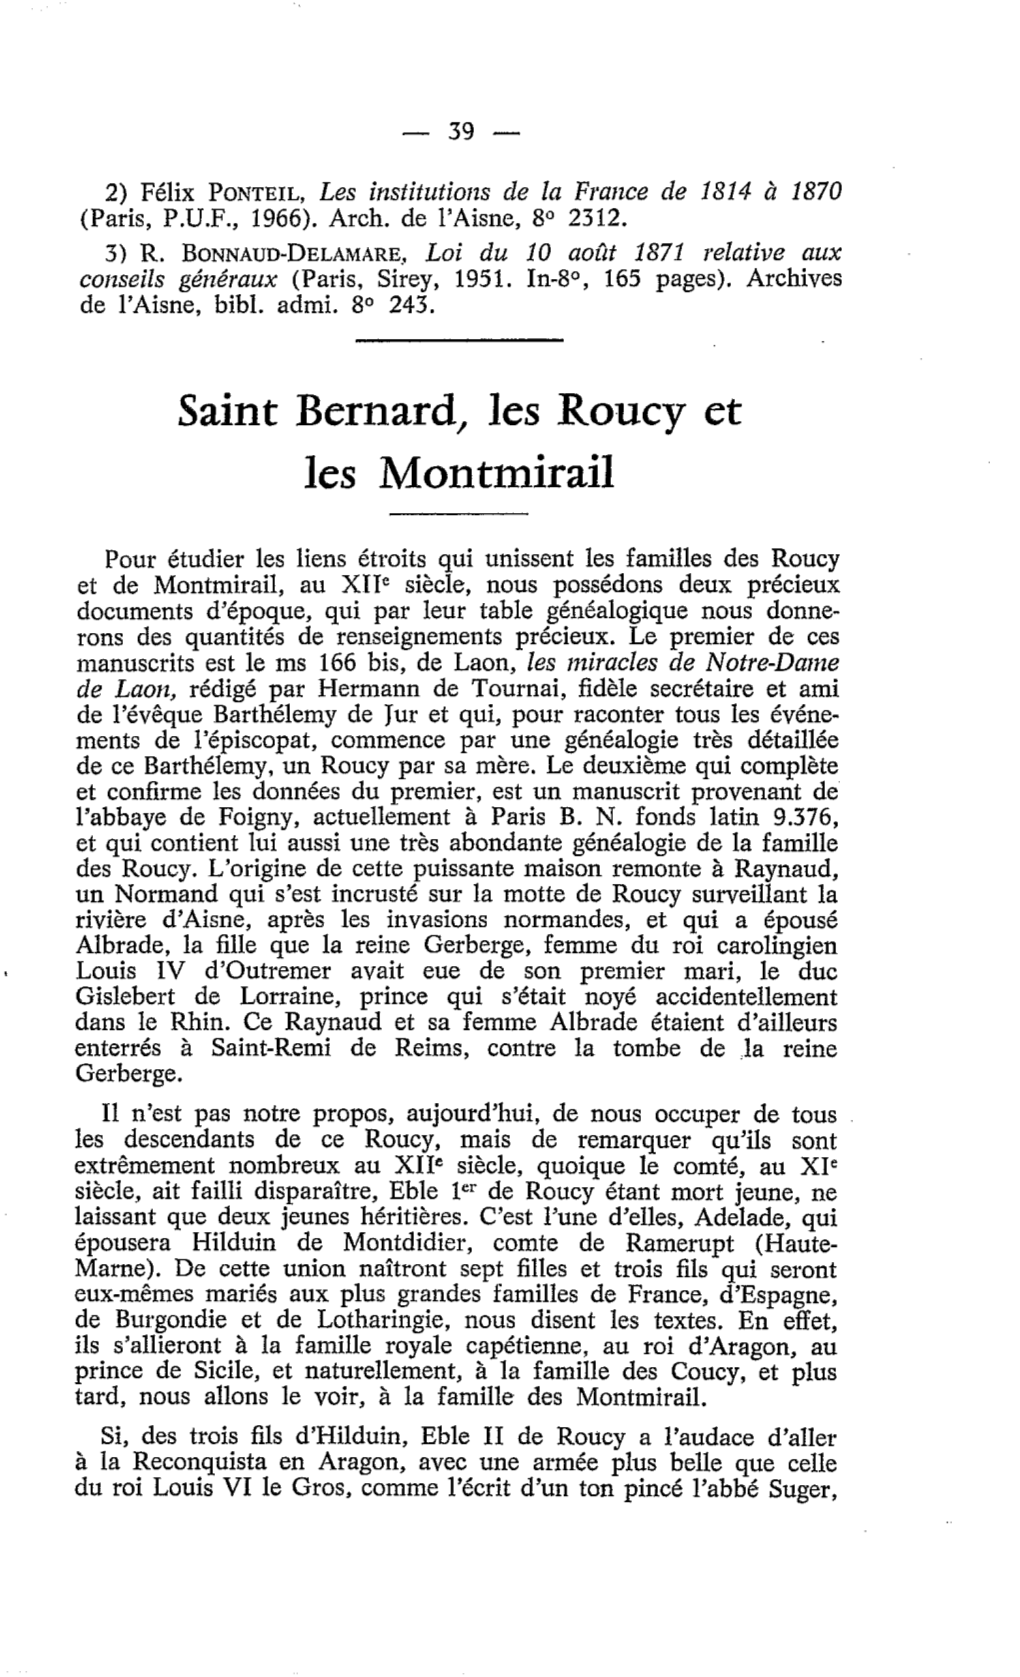 Saint Bernard, Les Roucy Et Les Montmirail